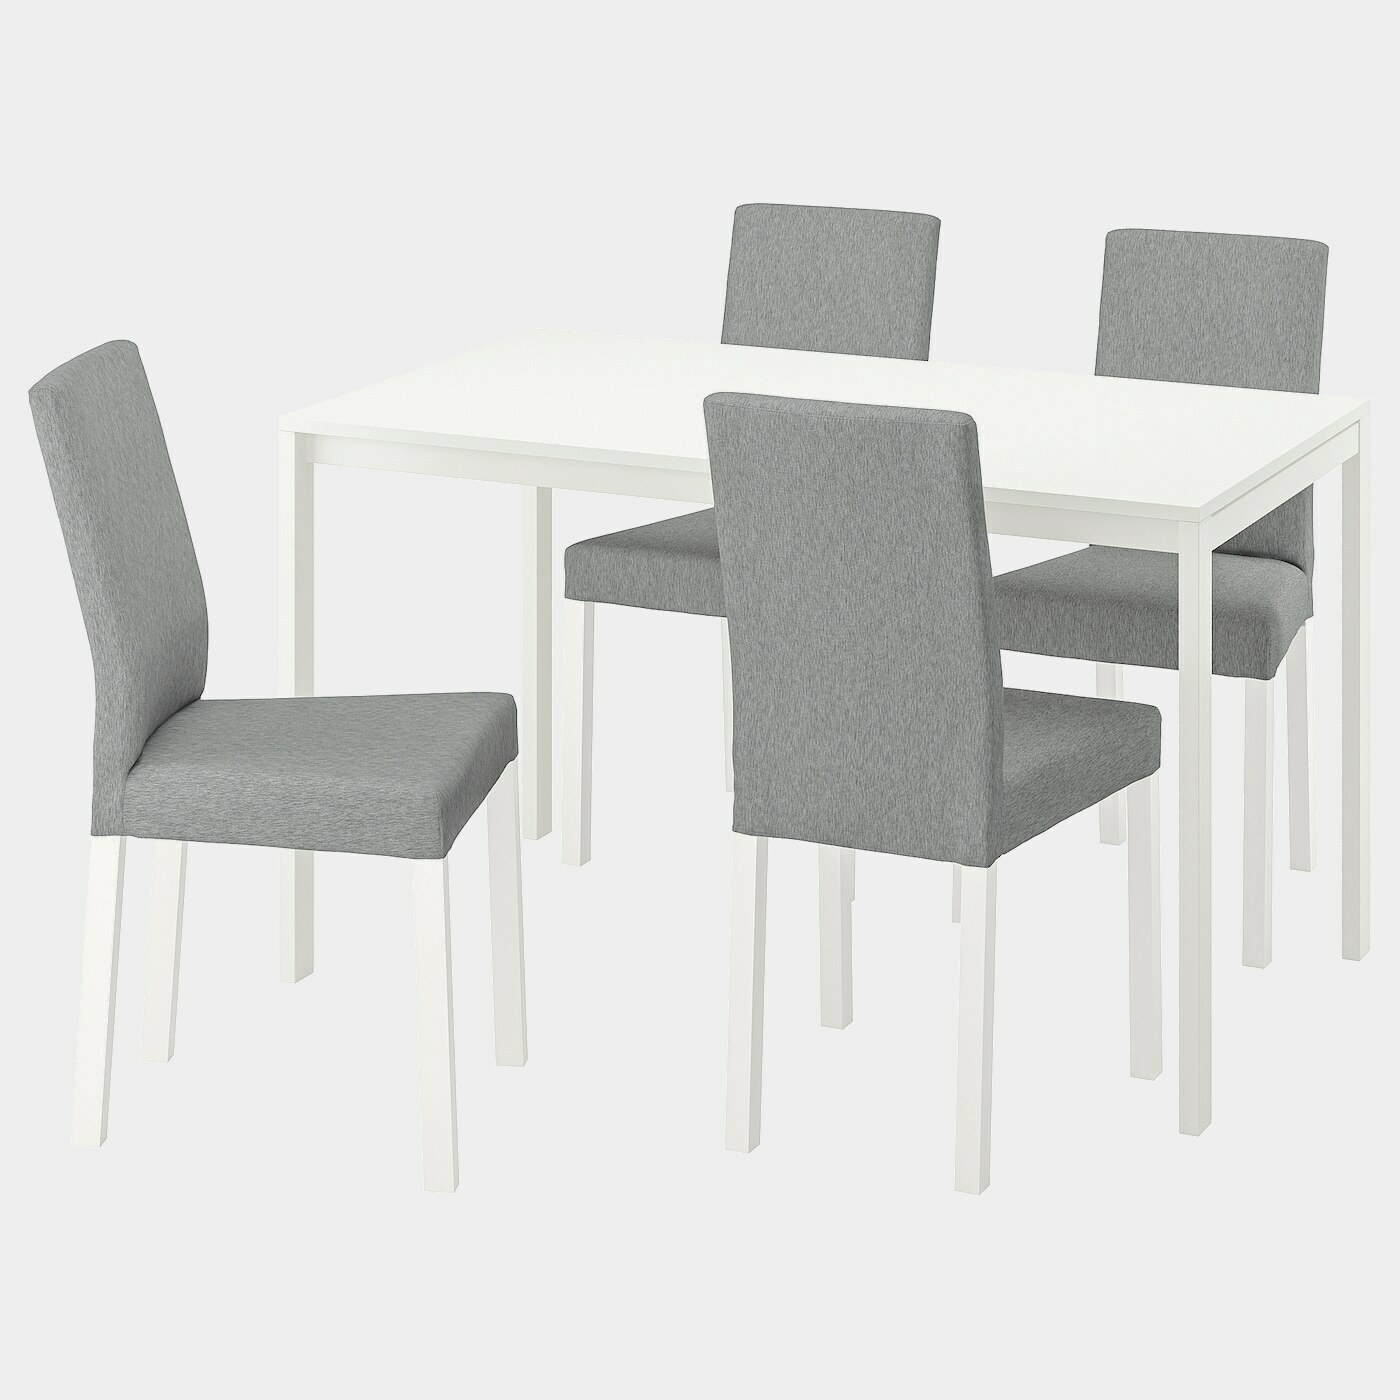 MELLTORP / KÄTTIL Tisch und 4 Stühle  -  - Möbel Ideen für dein Zuhause von Home Trends. Möbel Trends von Social Media Influencer für dein Skandi Zuhause.